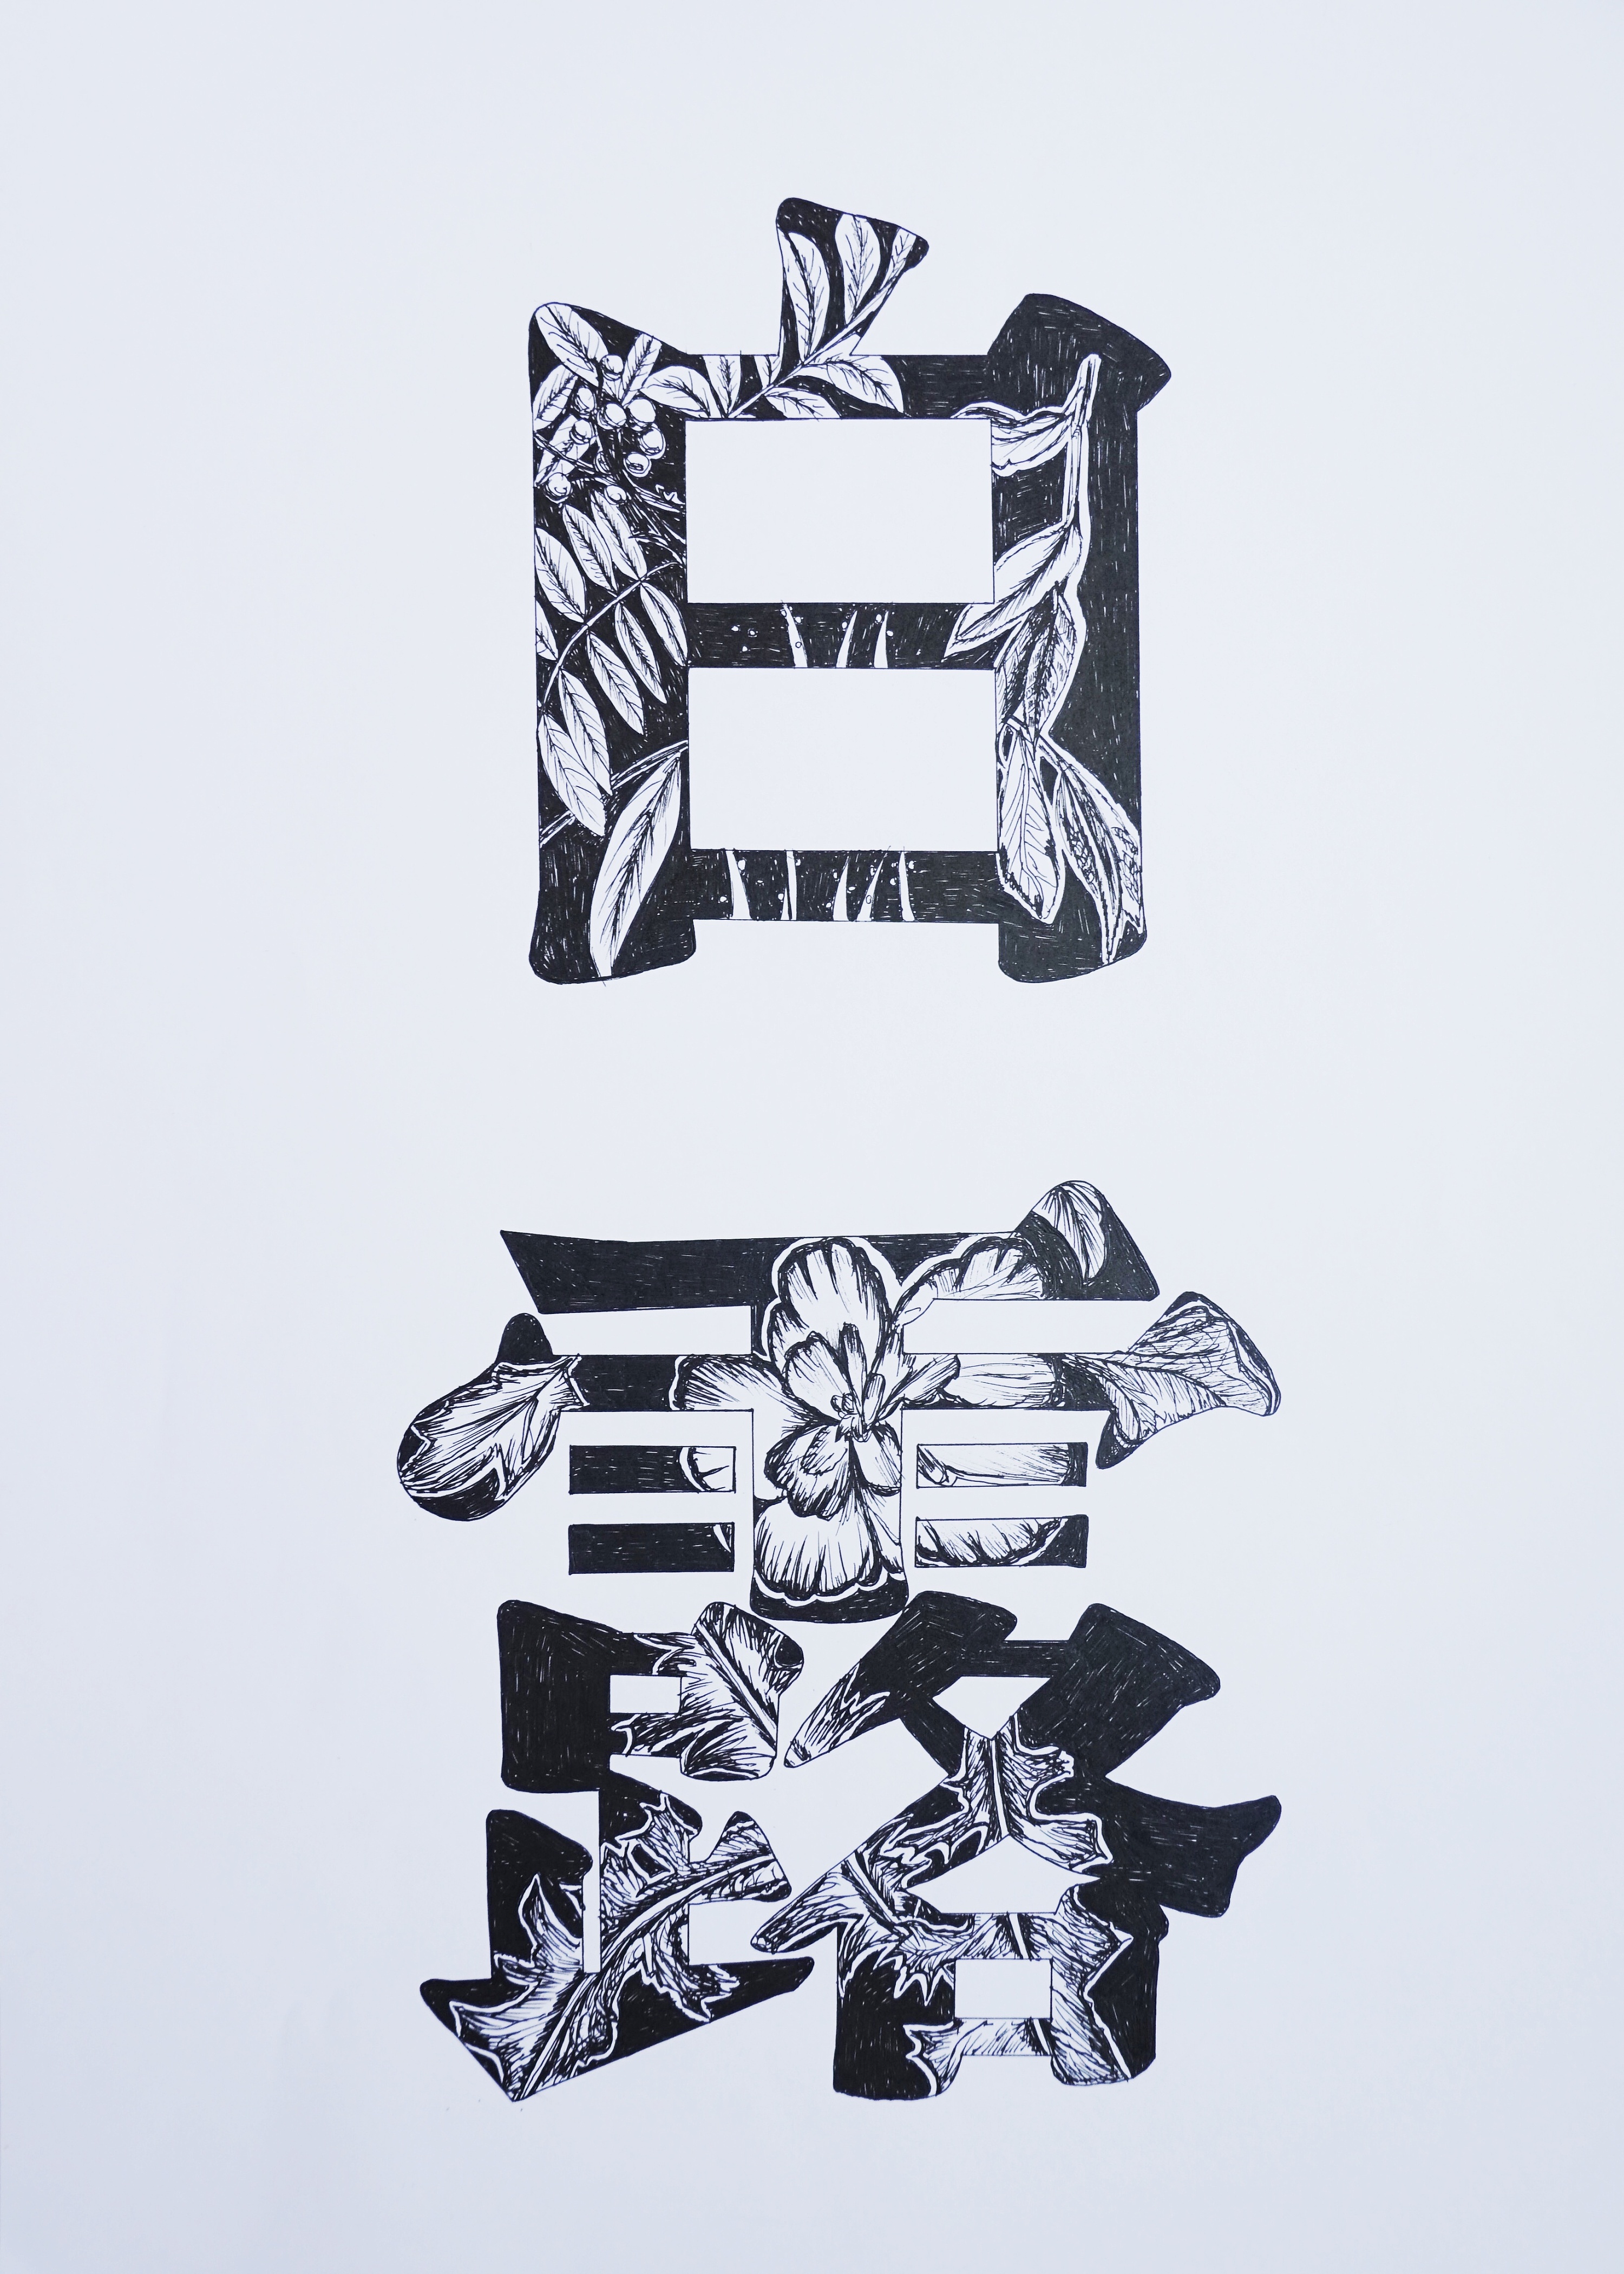 二十四节气字体装饰设计(手绘)2020a"国际绘画奖提名